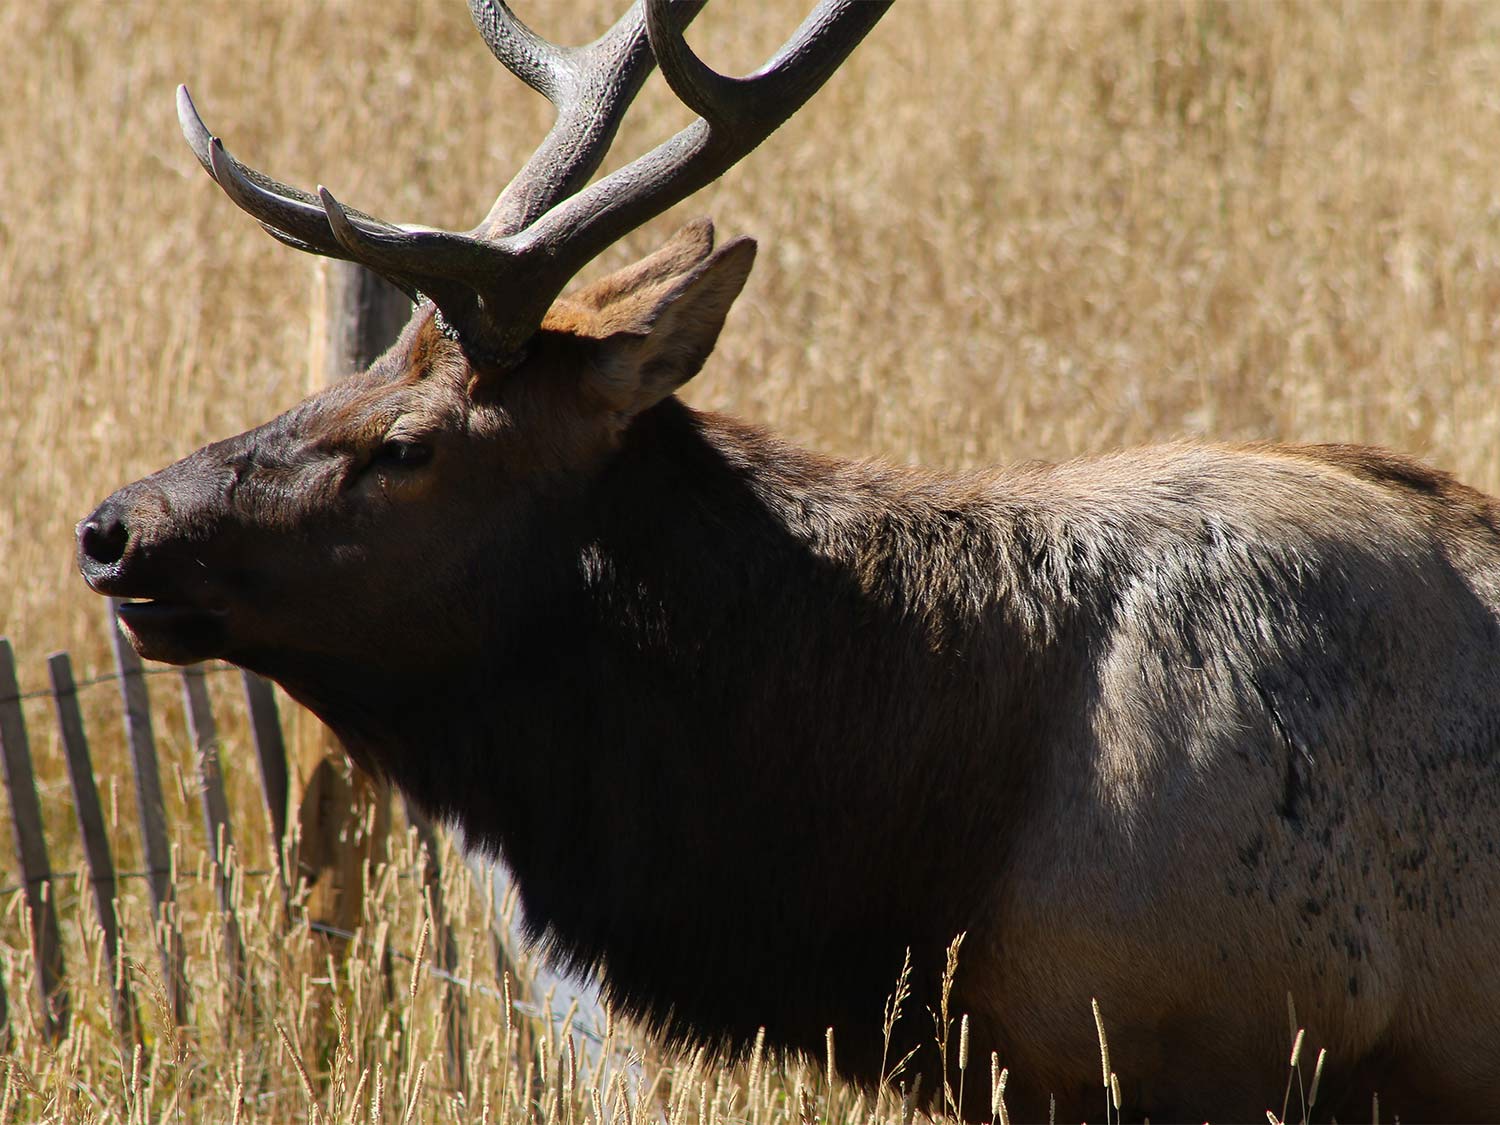 A large bull elk roams through a field of tall grass.